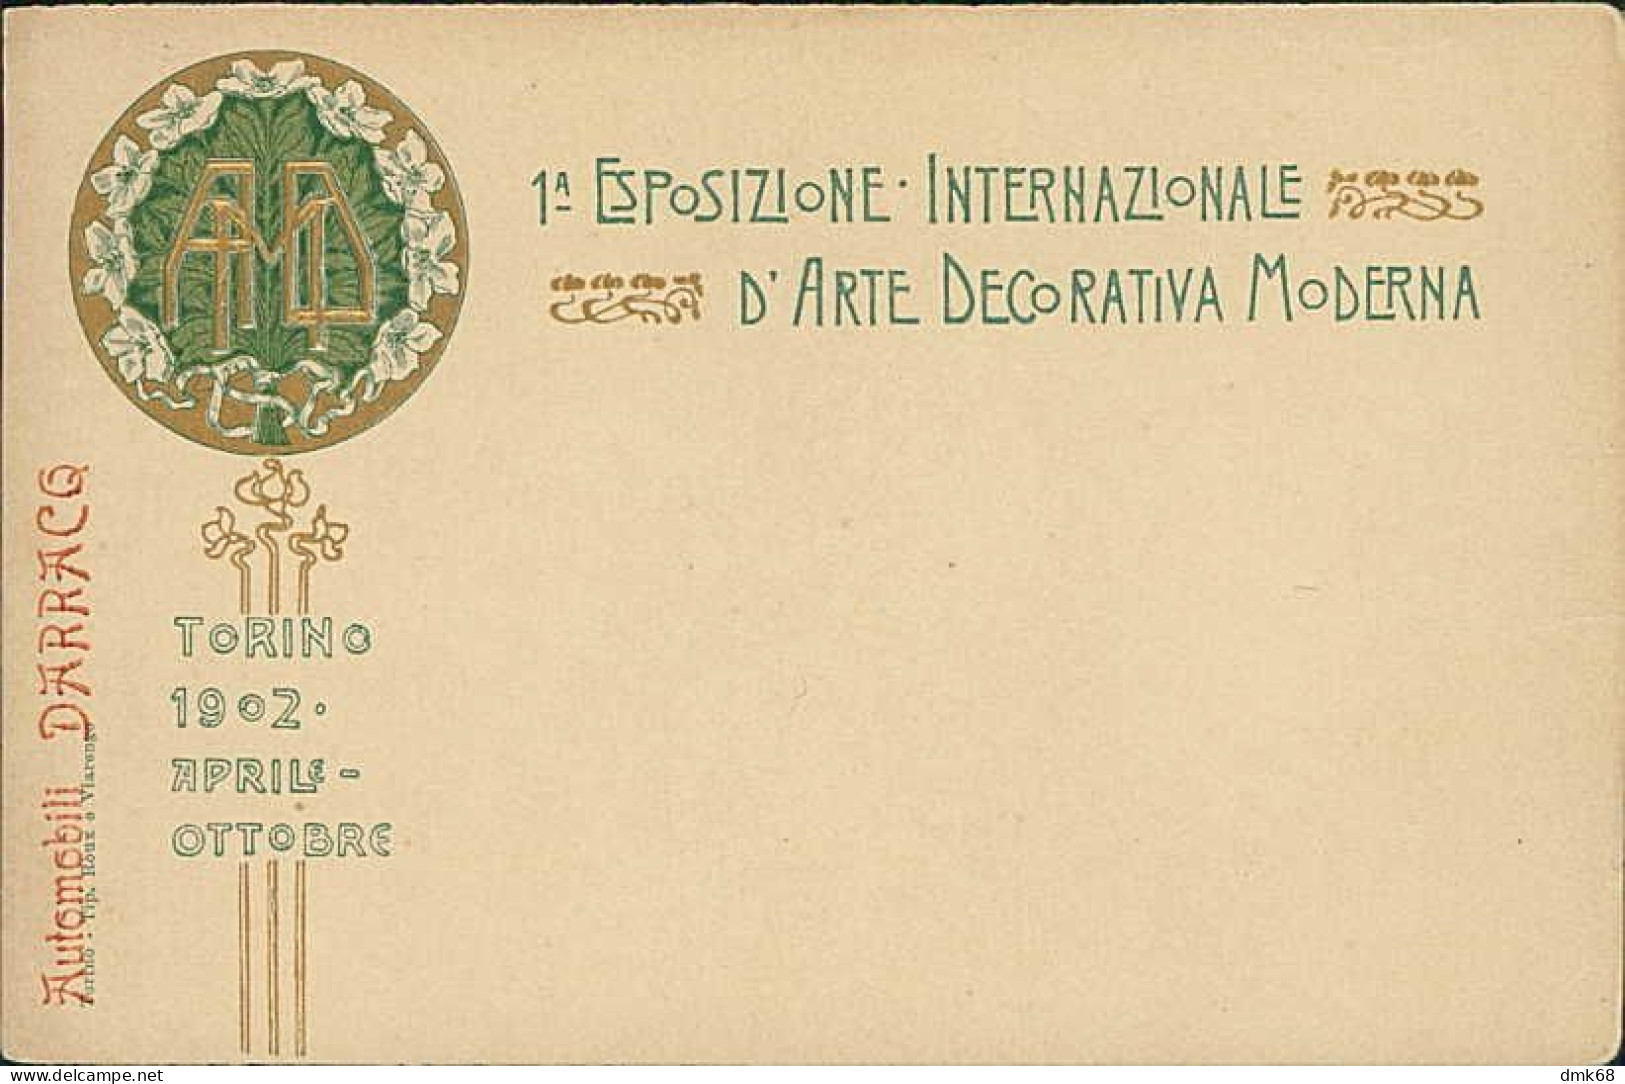 TORINO - 1 ESPOSZIONE INTERNAZIONALE D'ARTE DECORATIVA MODERNA - 1902 (18271) - Expositions